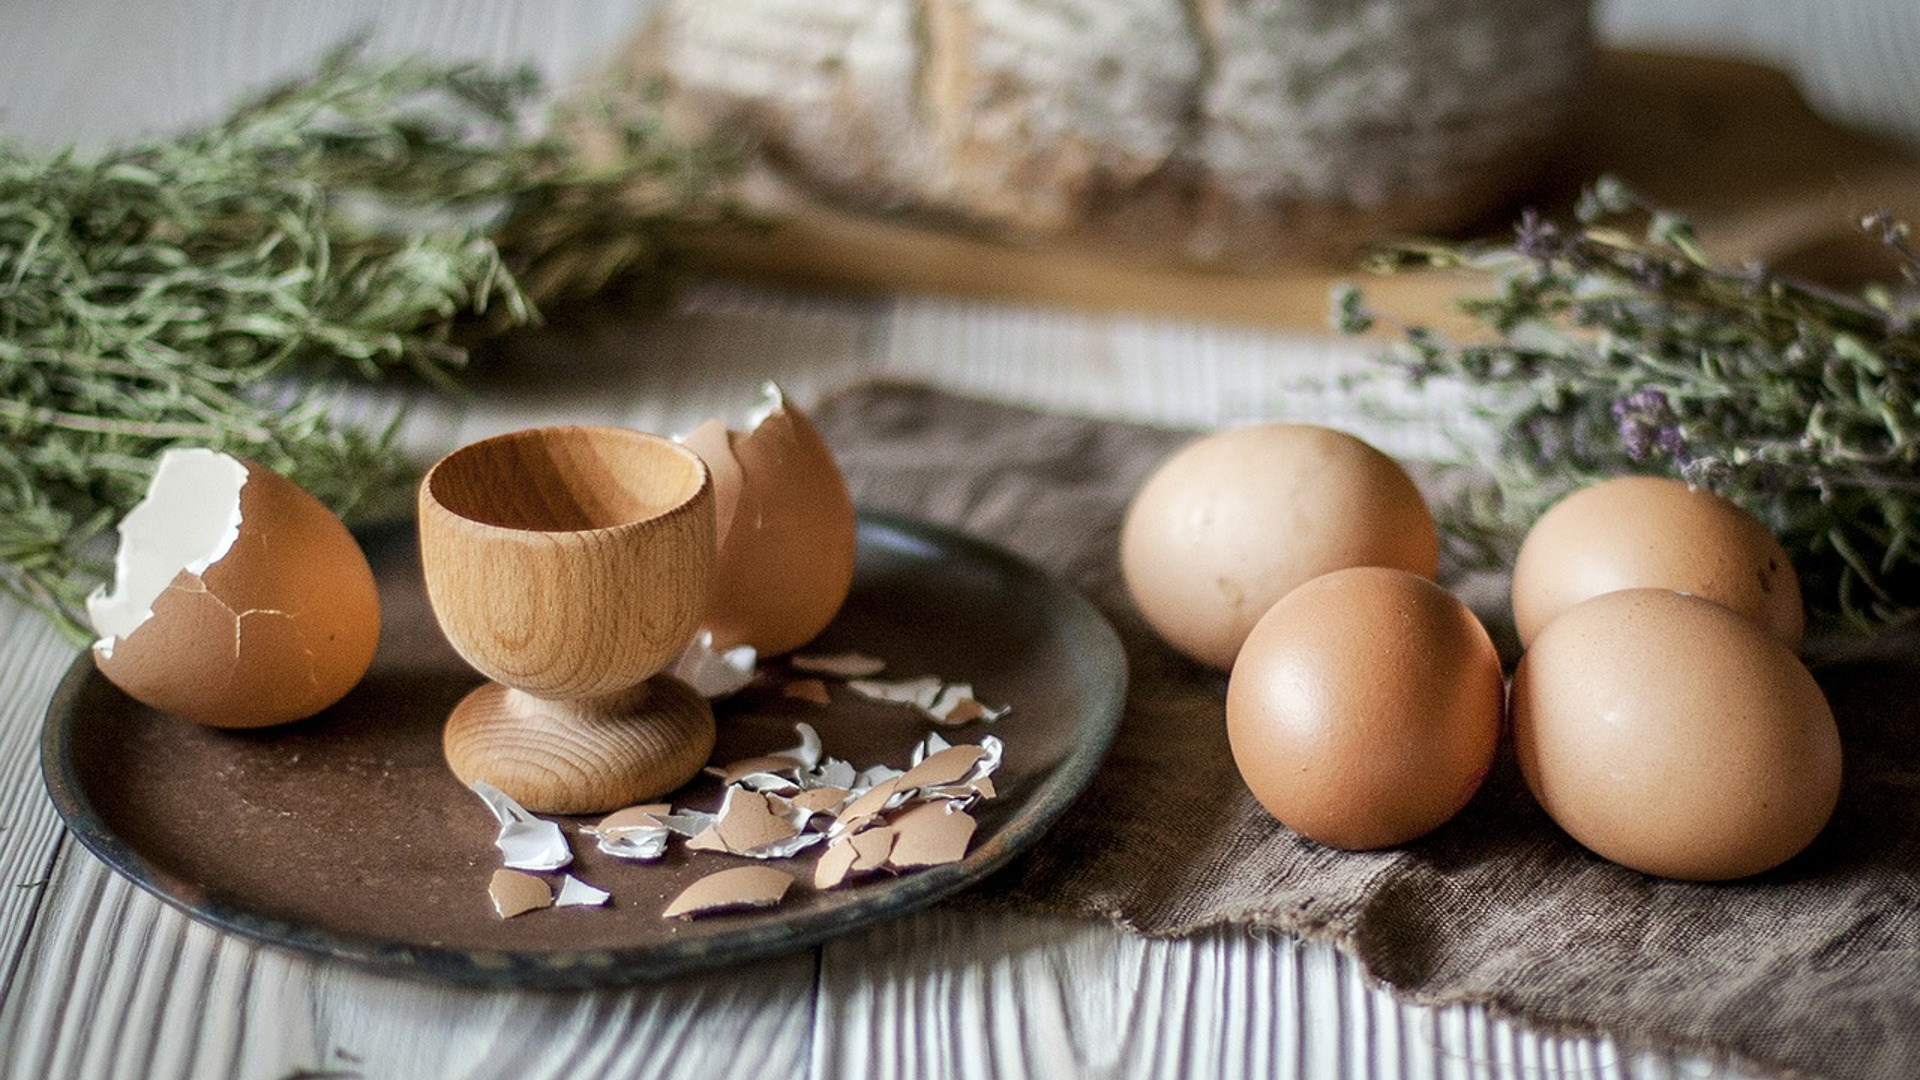 Colesterolo e uova: un vecchio pregiudizio da sconfiggere?